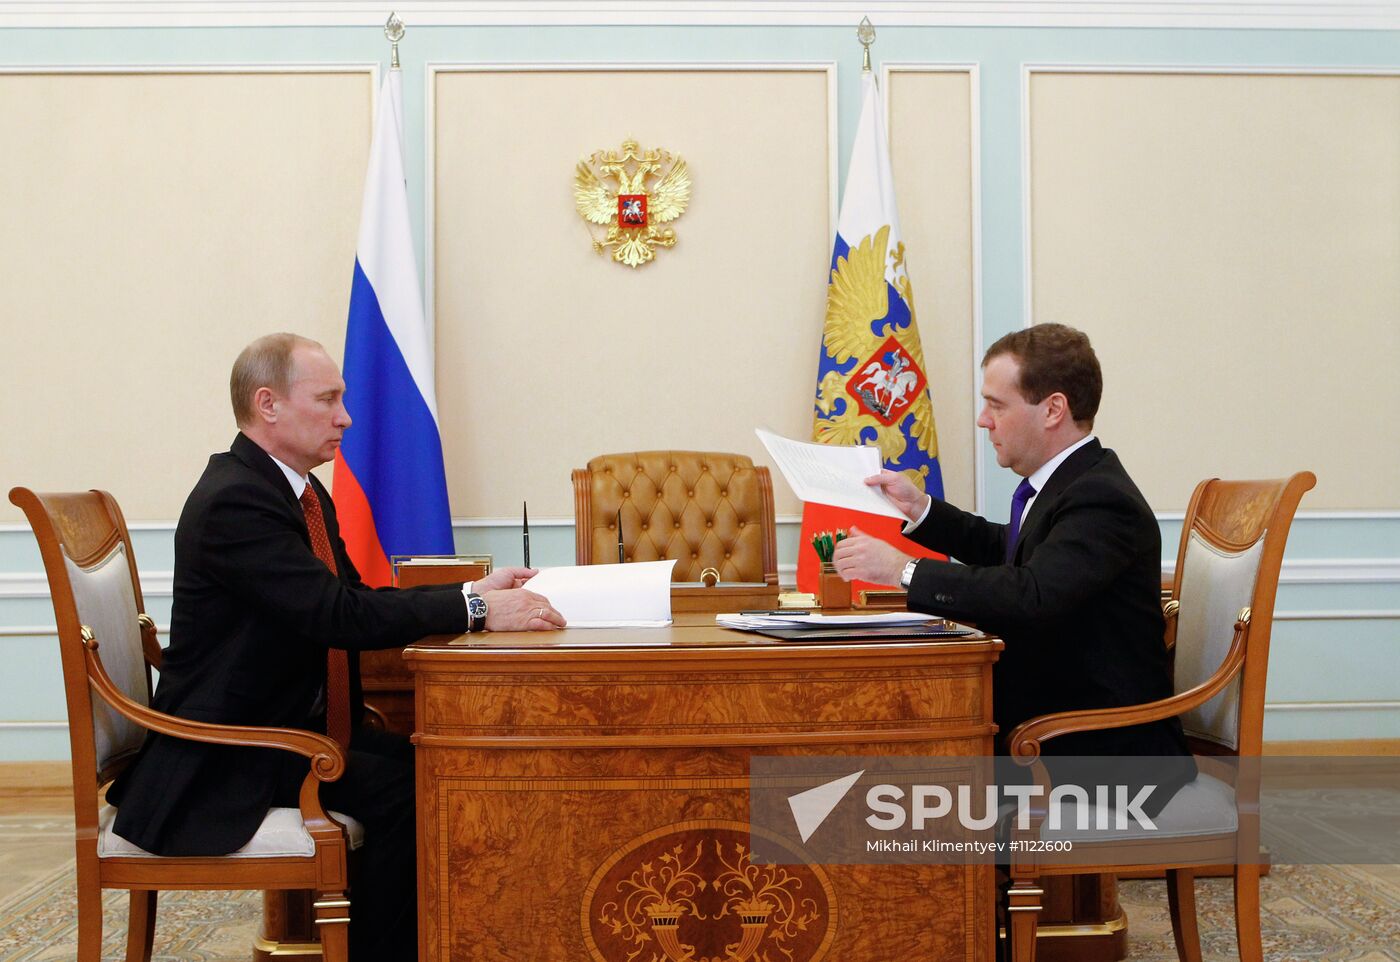 Putin, Medvedev meet in Kremlin